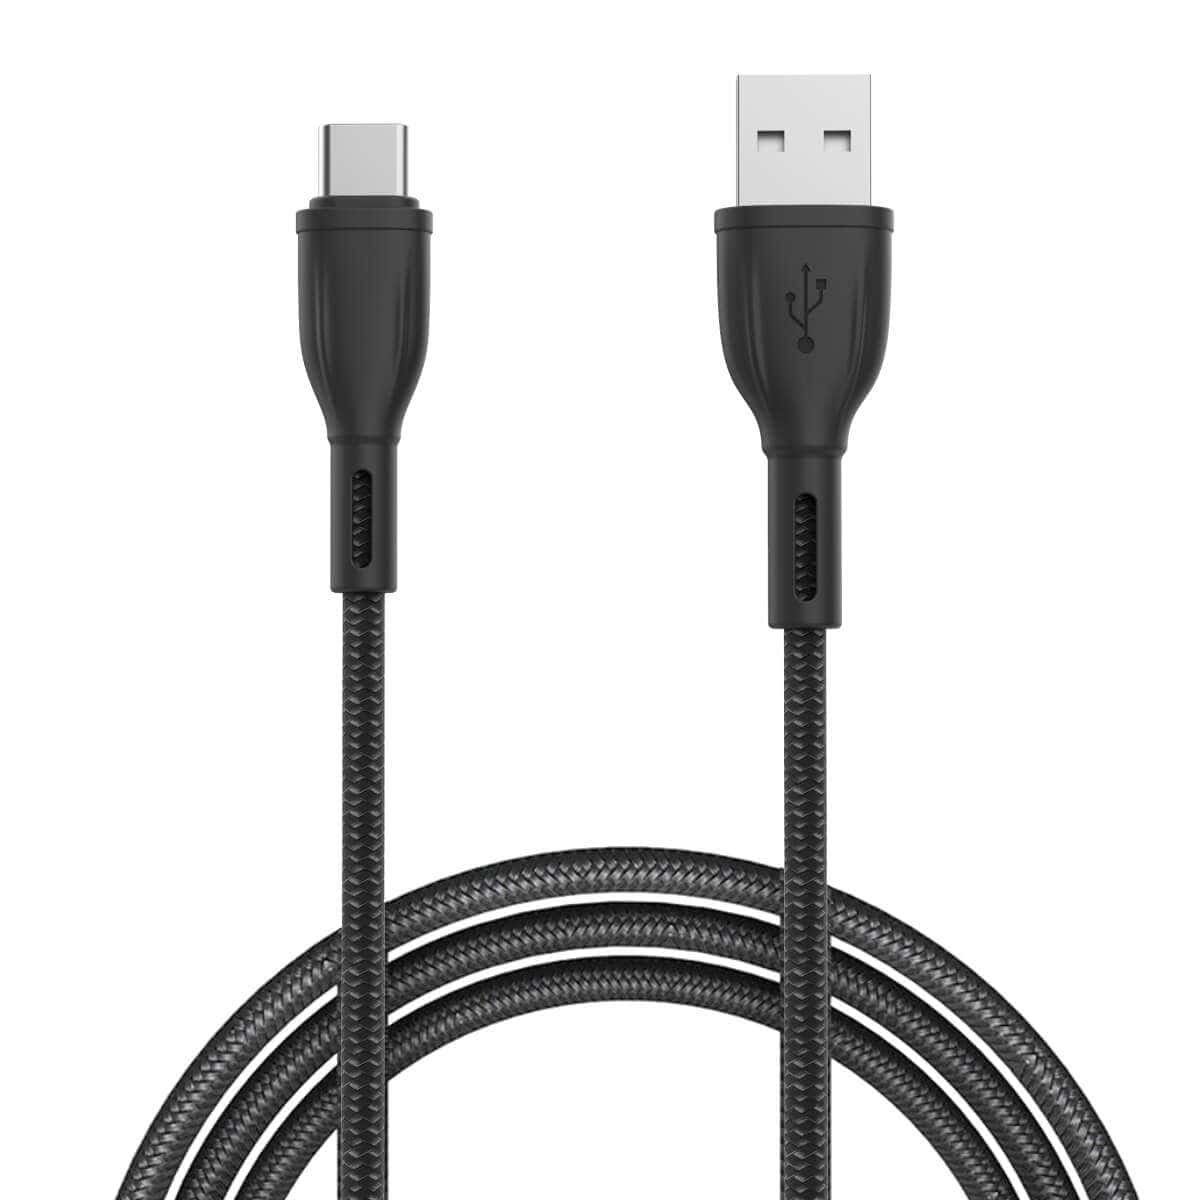 PORTRONICS-Konnect Plus 1.2M Type-C USB Cable